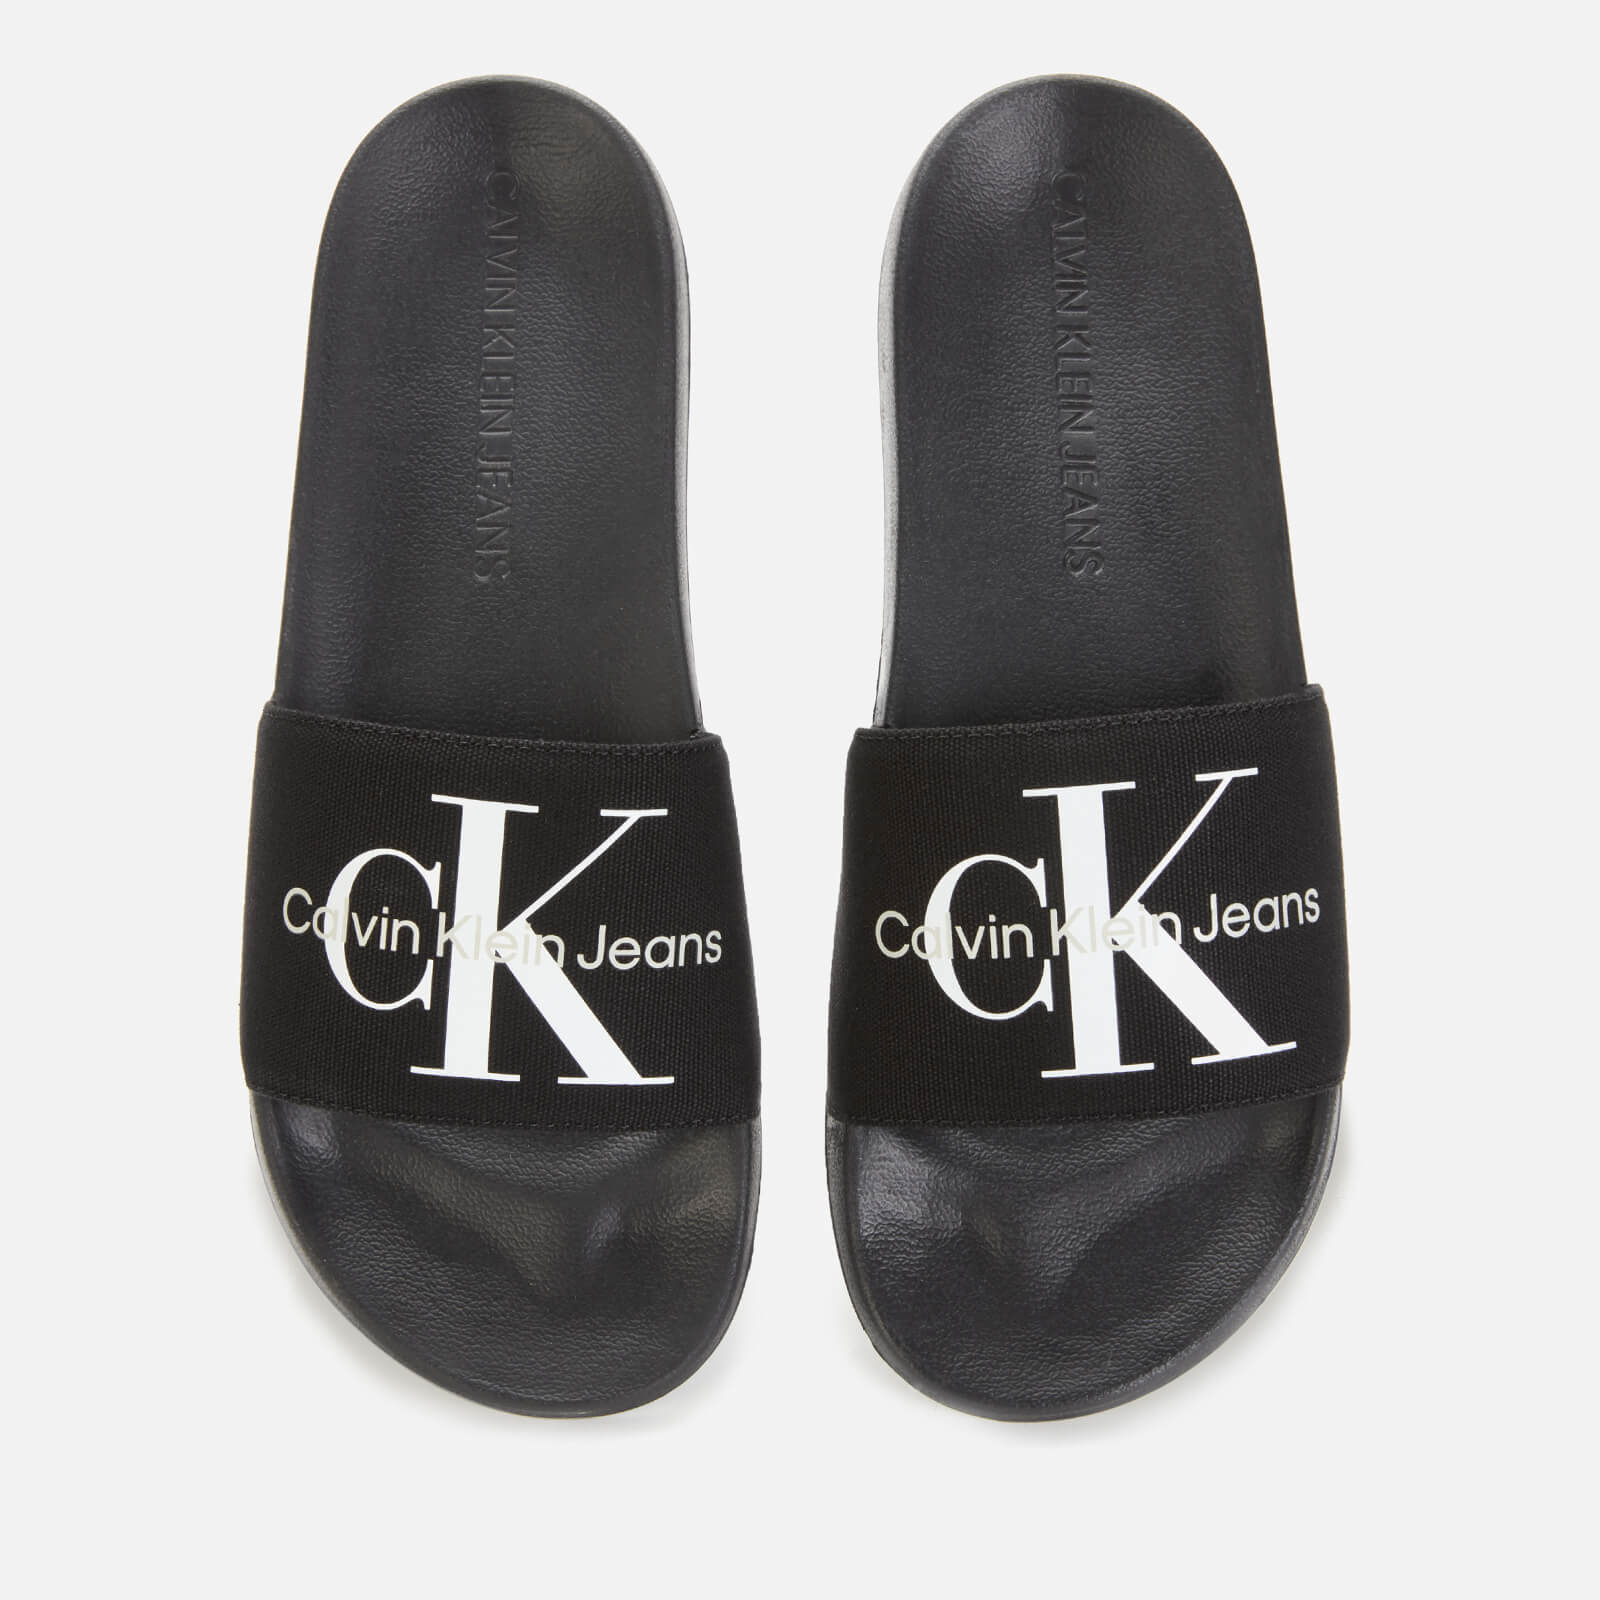 Calvin Klein Jeans Men's Monogram Slide Sandals - Black - UK 7